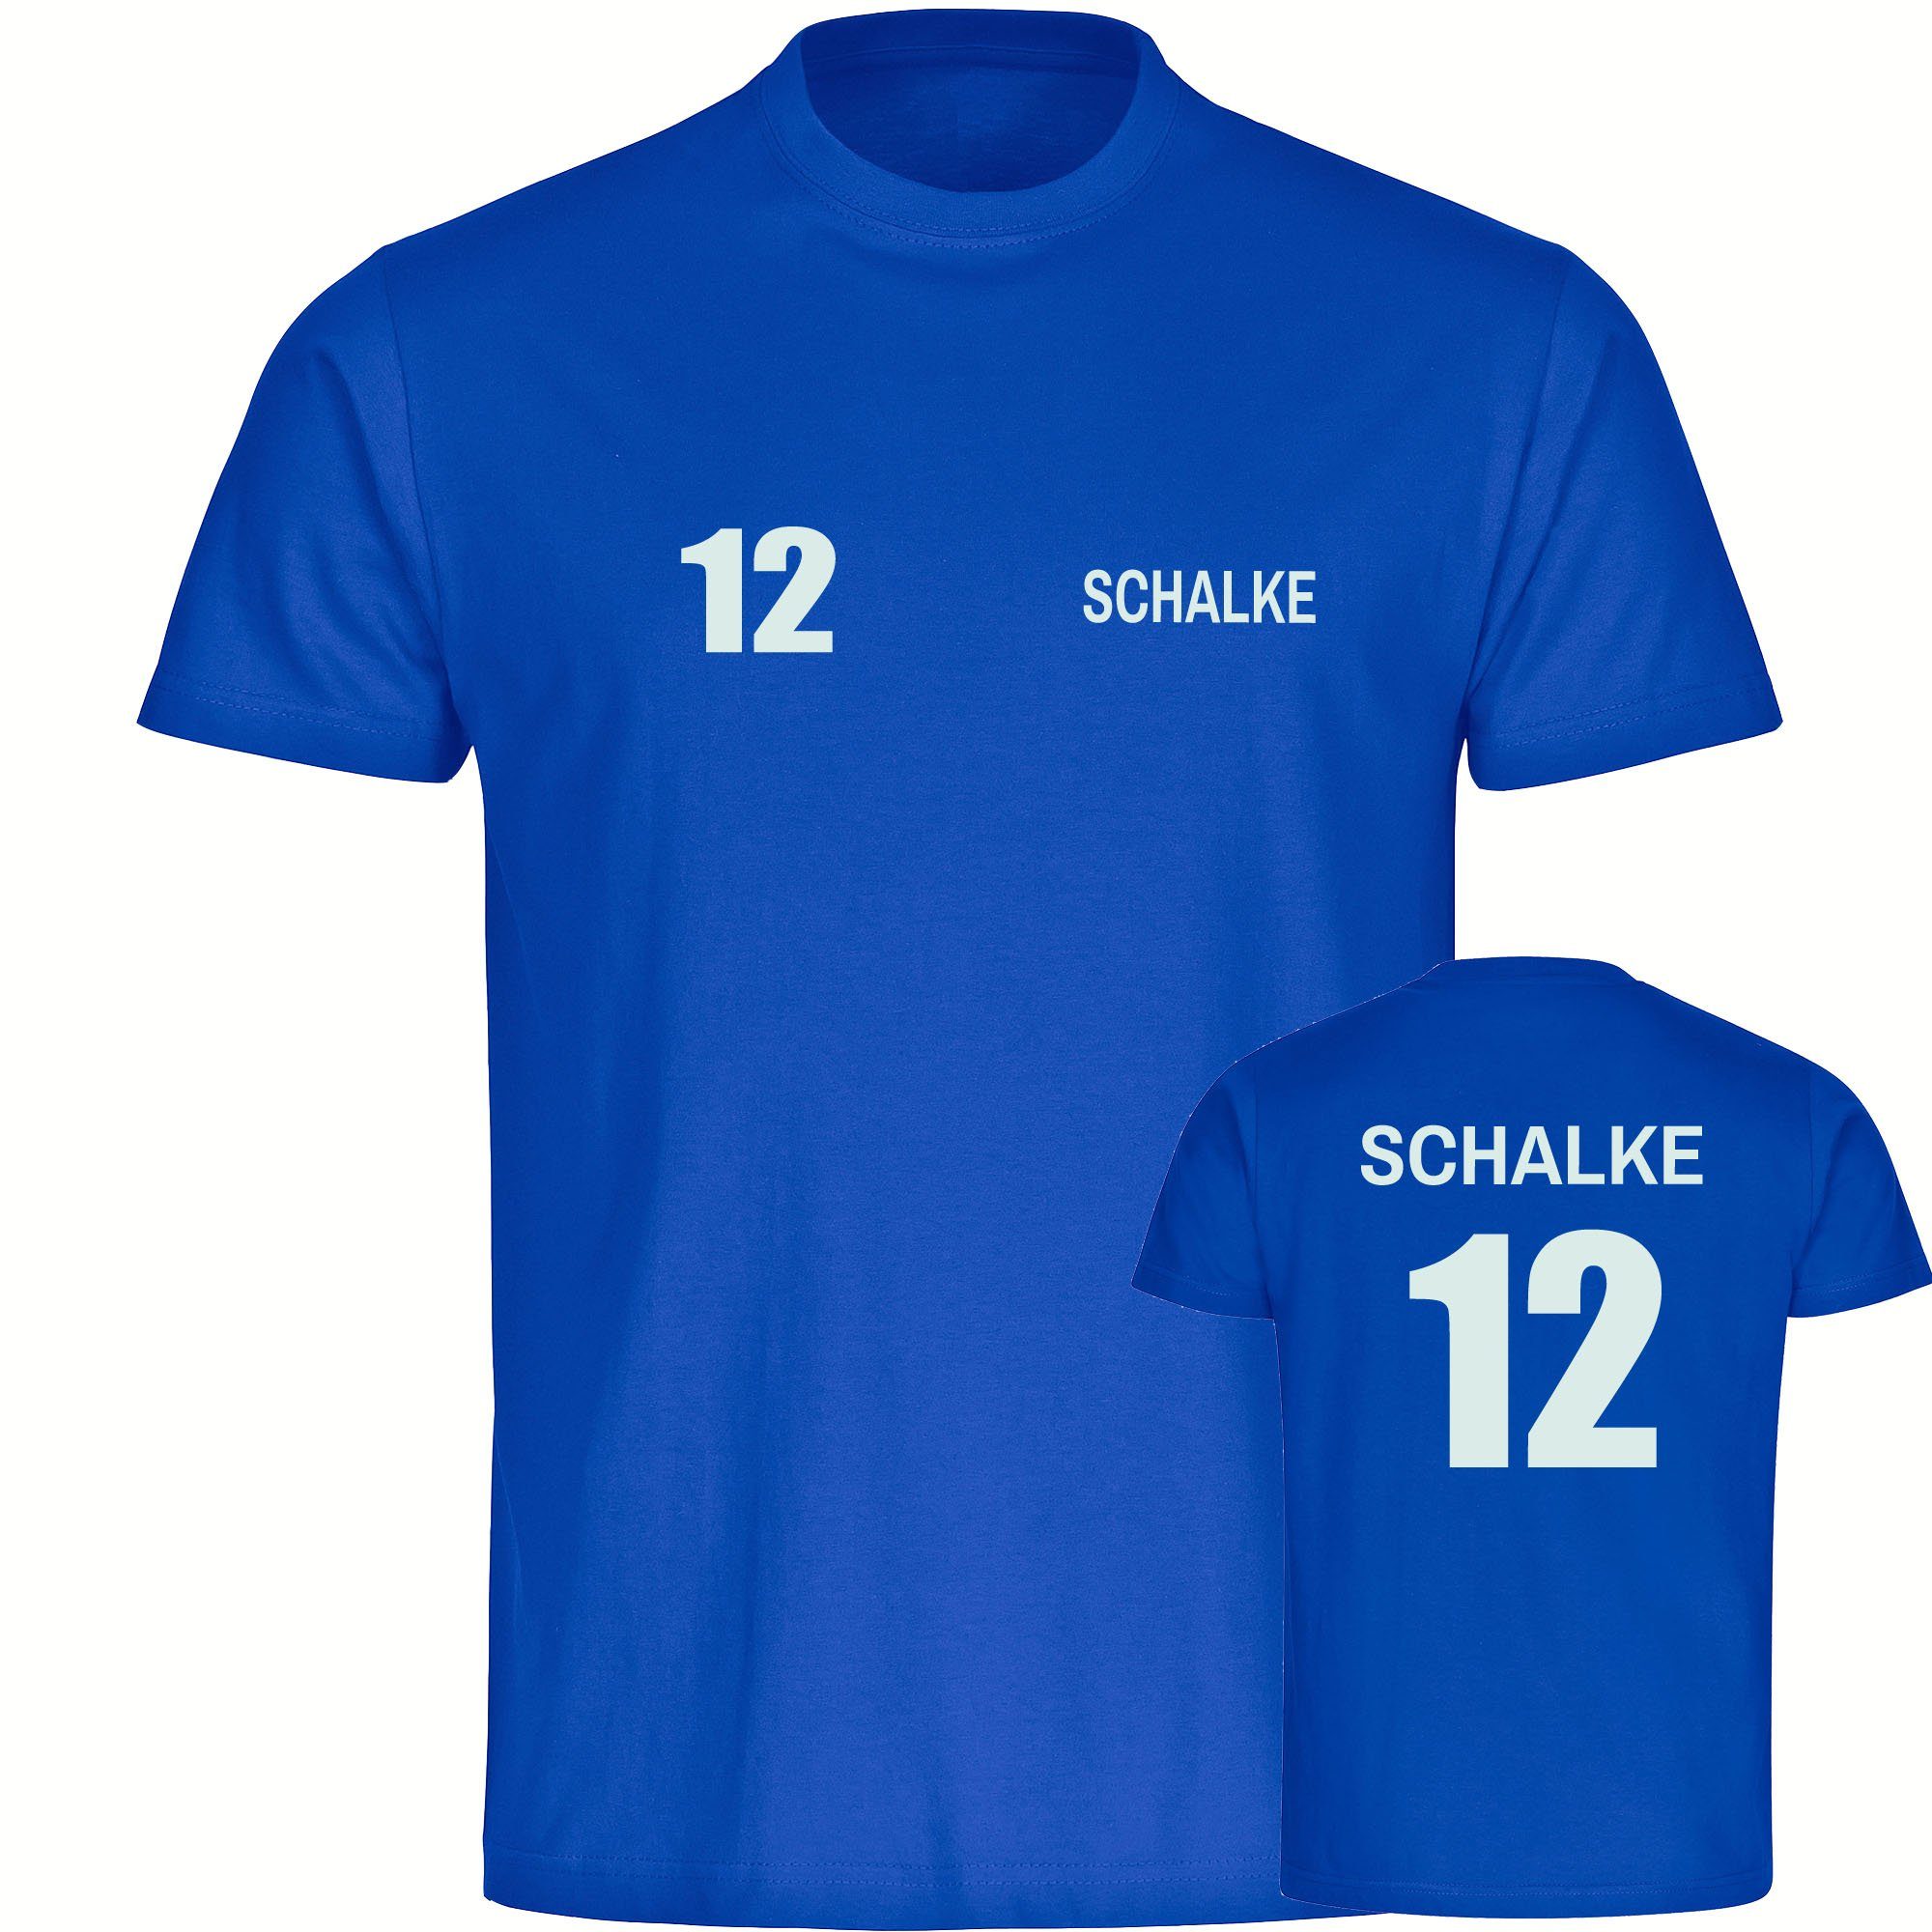 multifanshop T-Shirt Herren Schalke - Trikot 12 - Männer